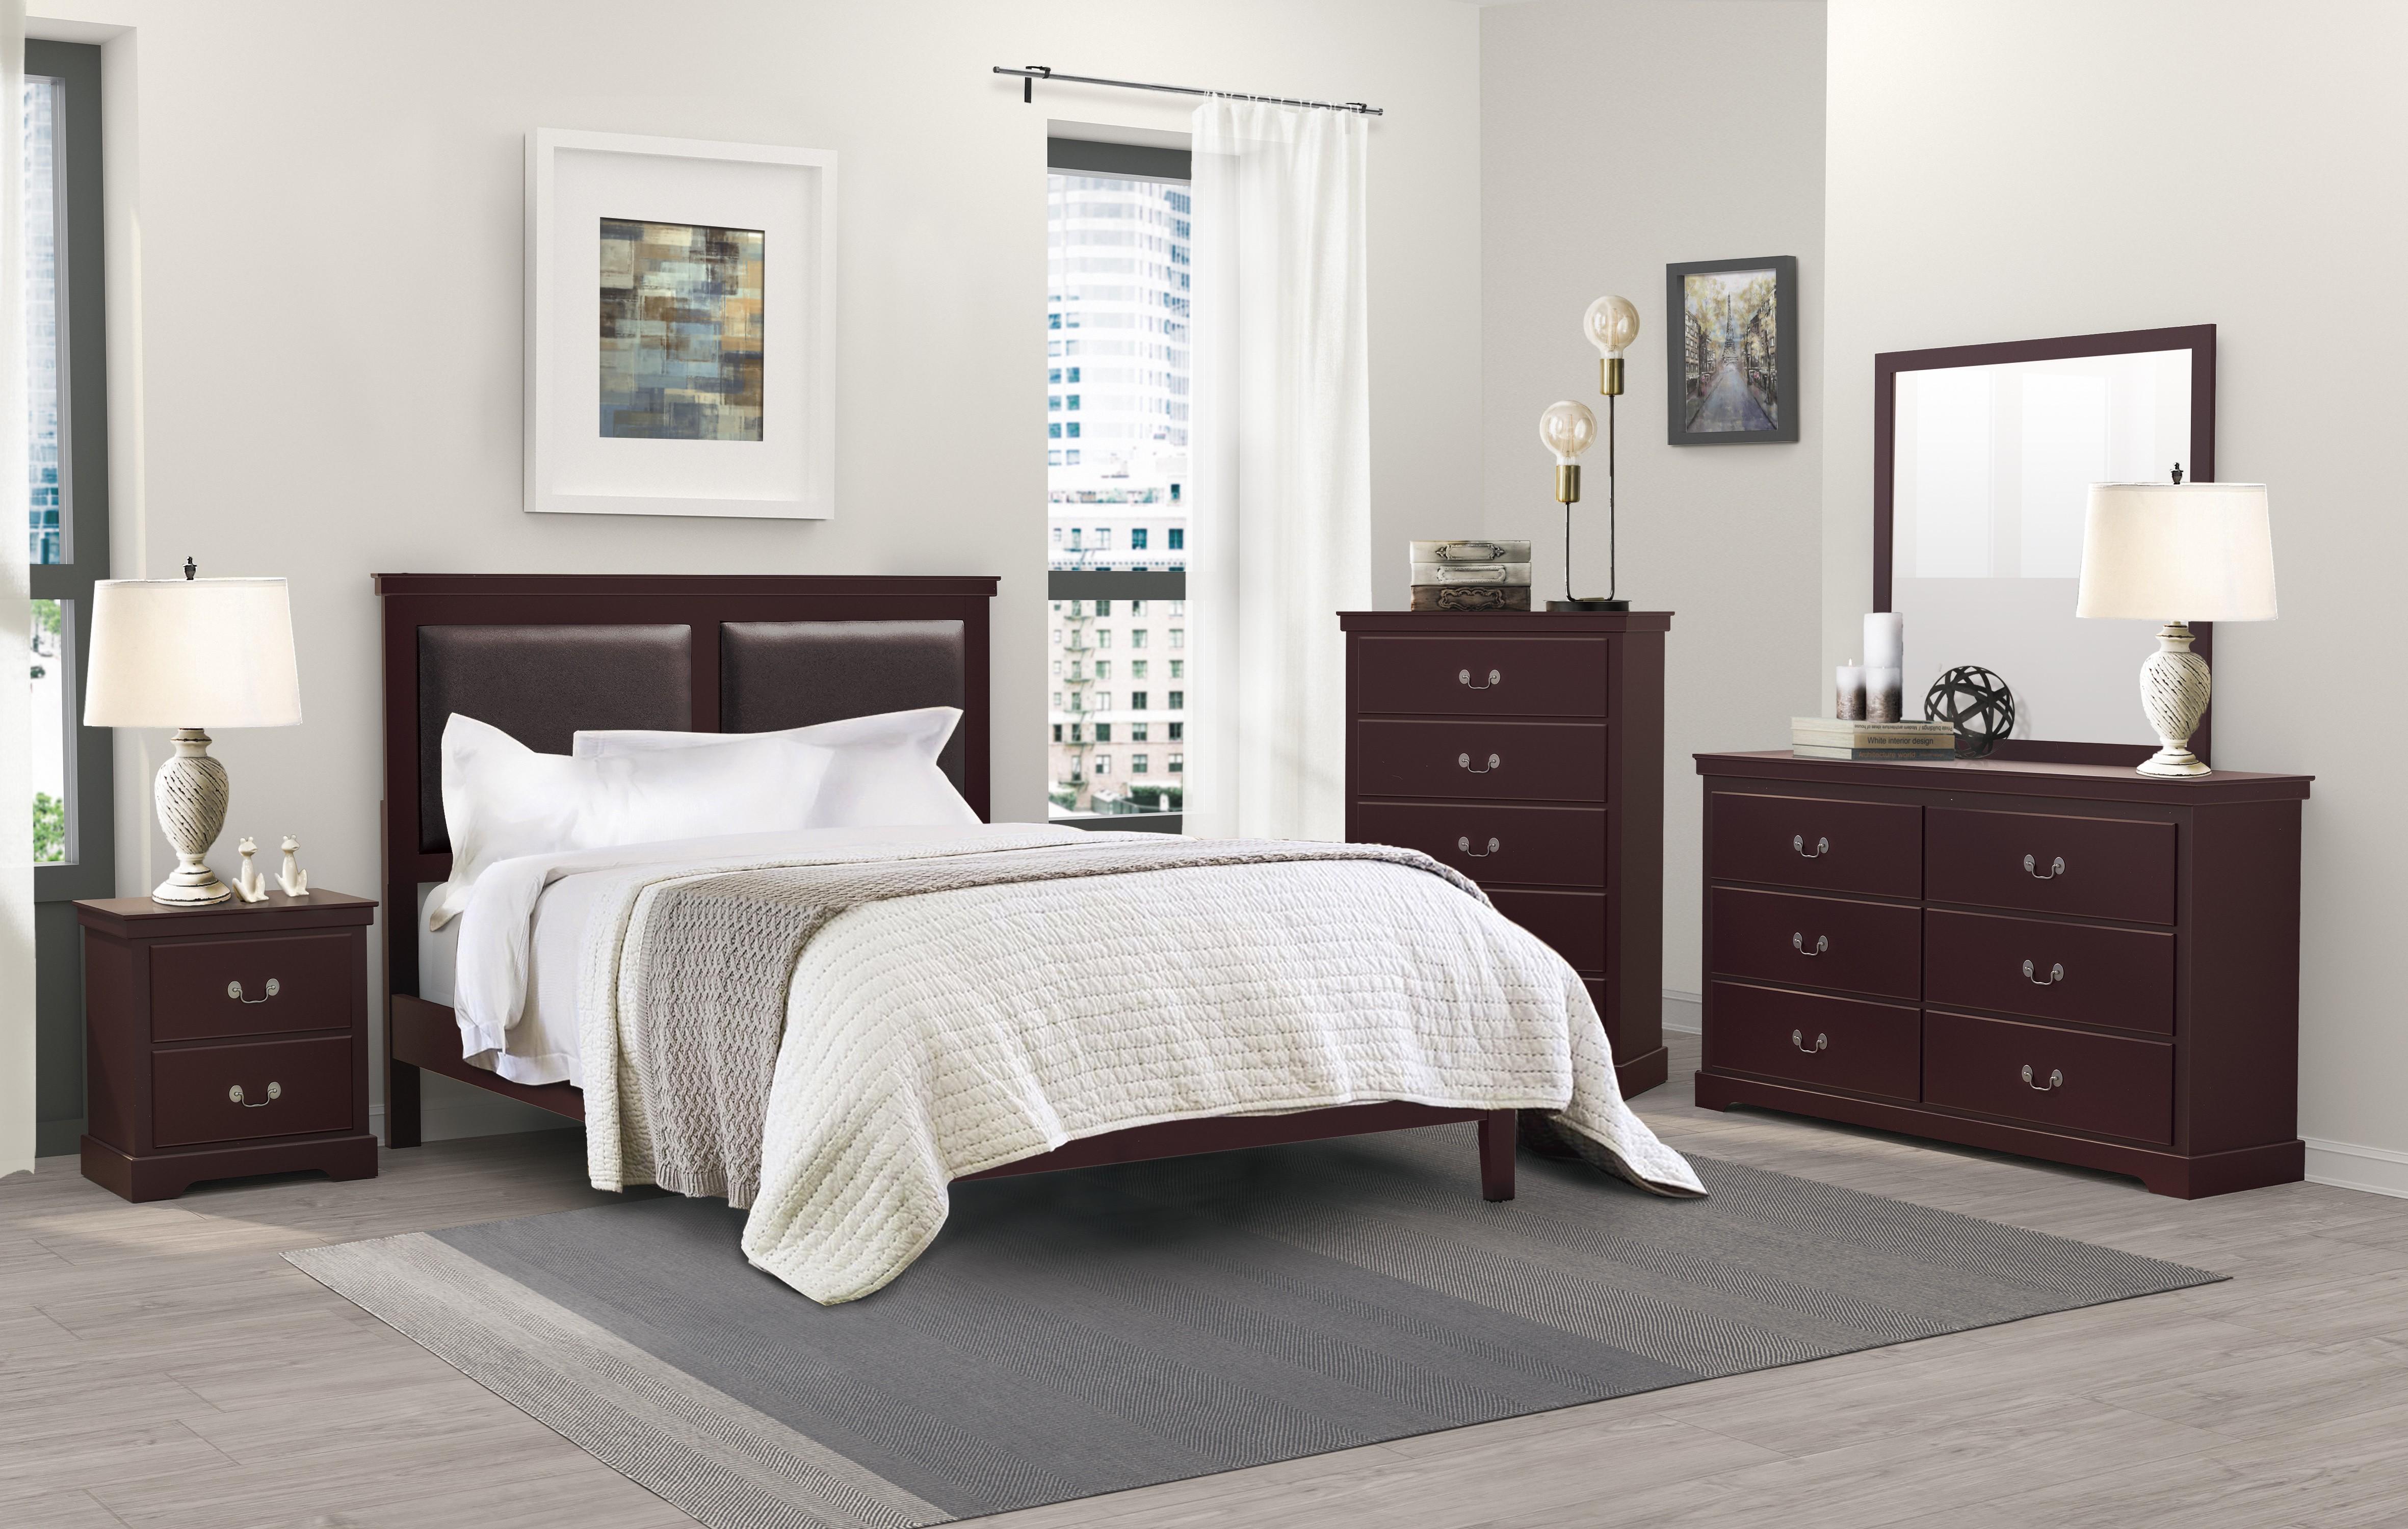 

                    
Buy Modern Cherry Wood Full Bedroom Set 3pcs Homelegance 1519CHF-1* Seabright
